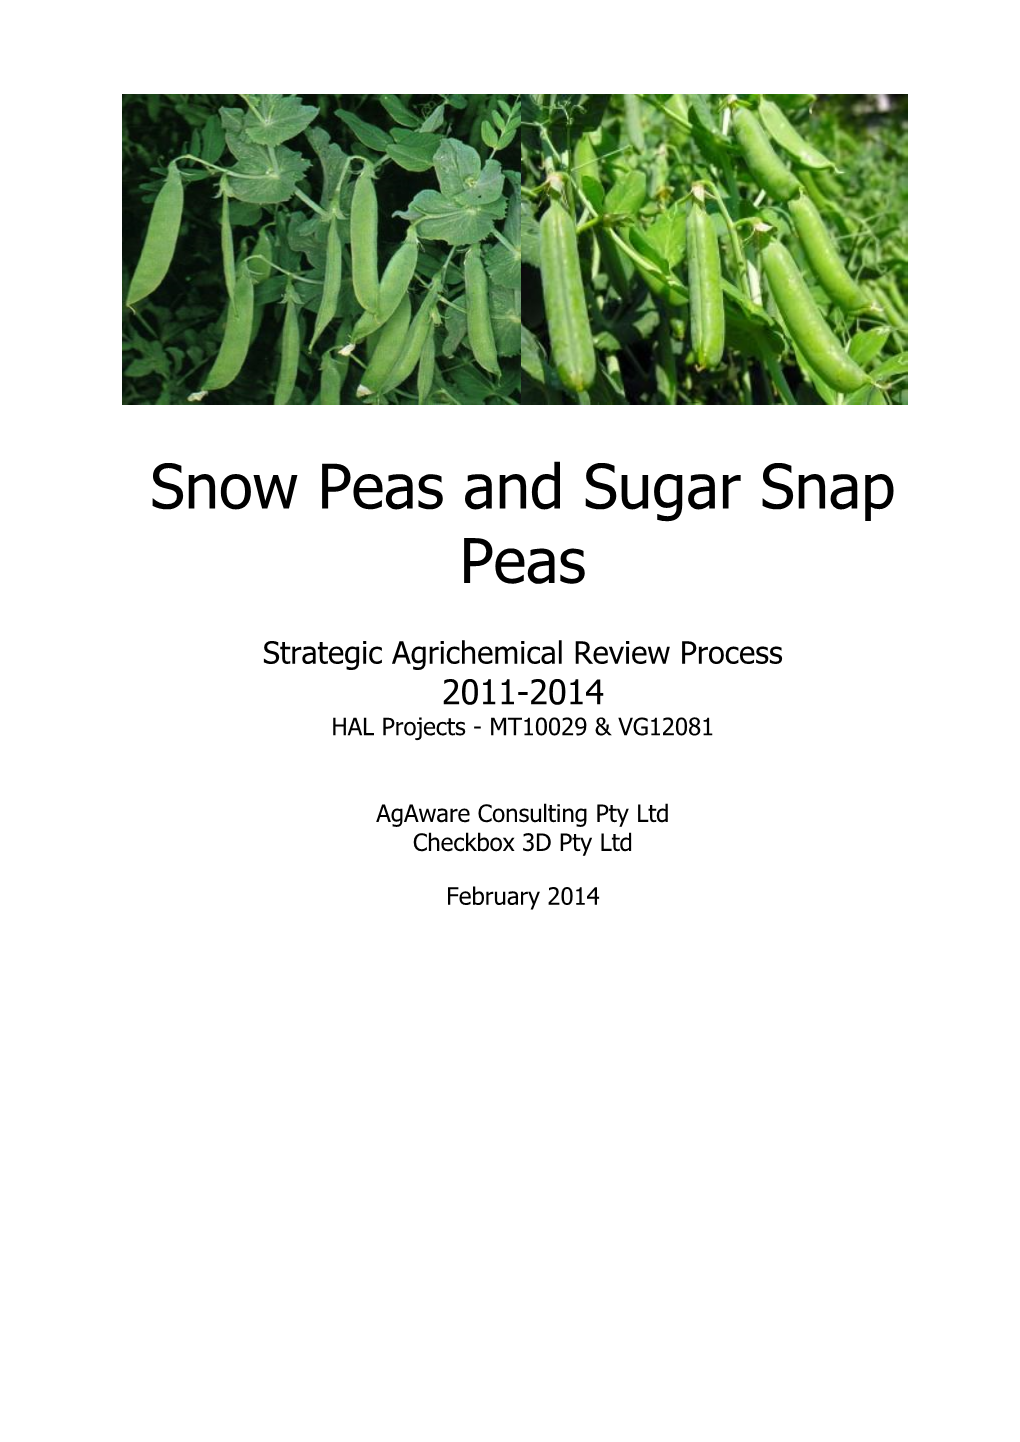 Snow Peas and Sugar Snap Peas